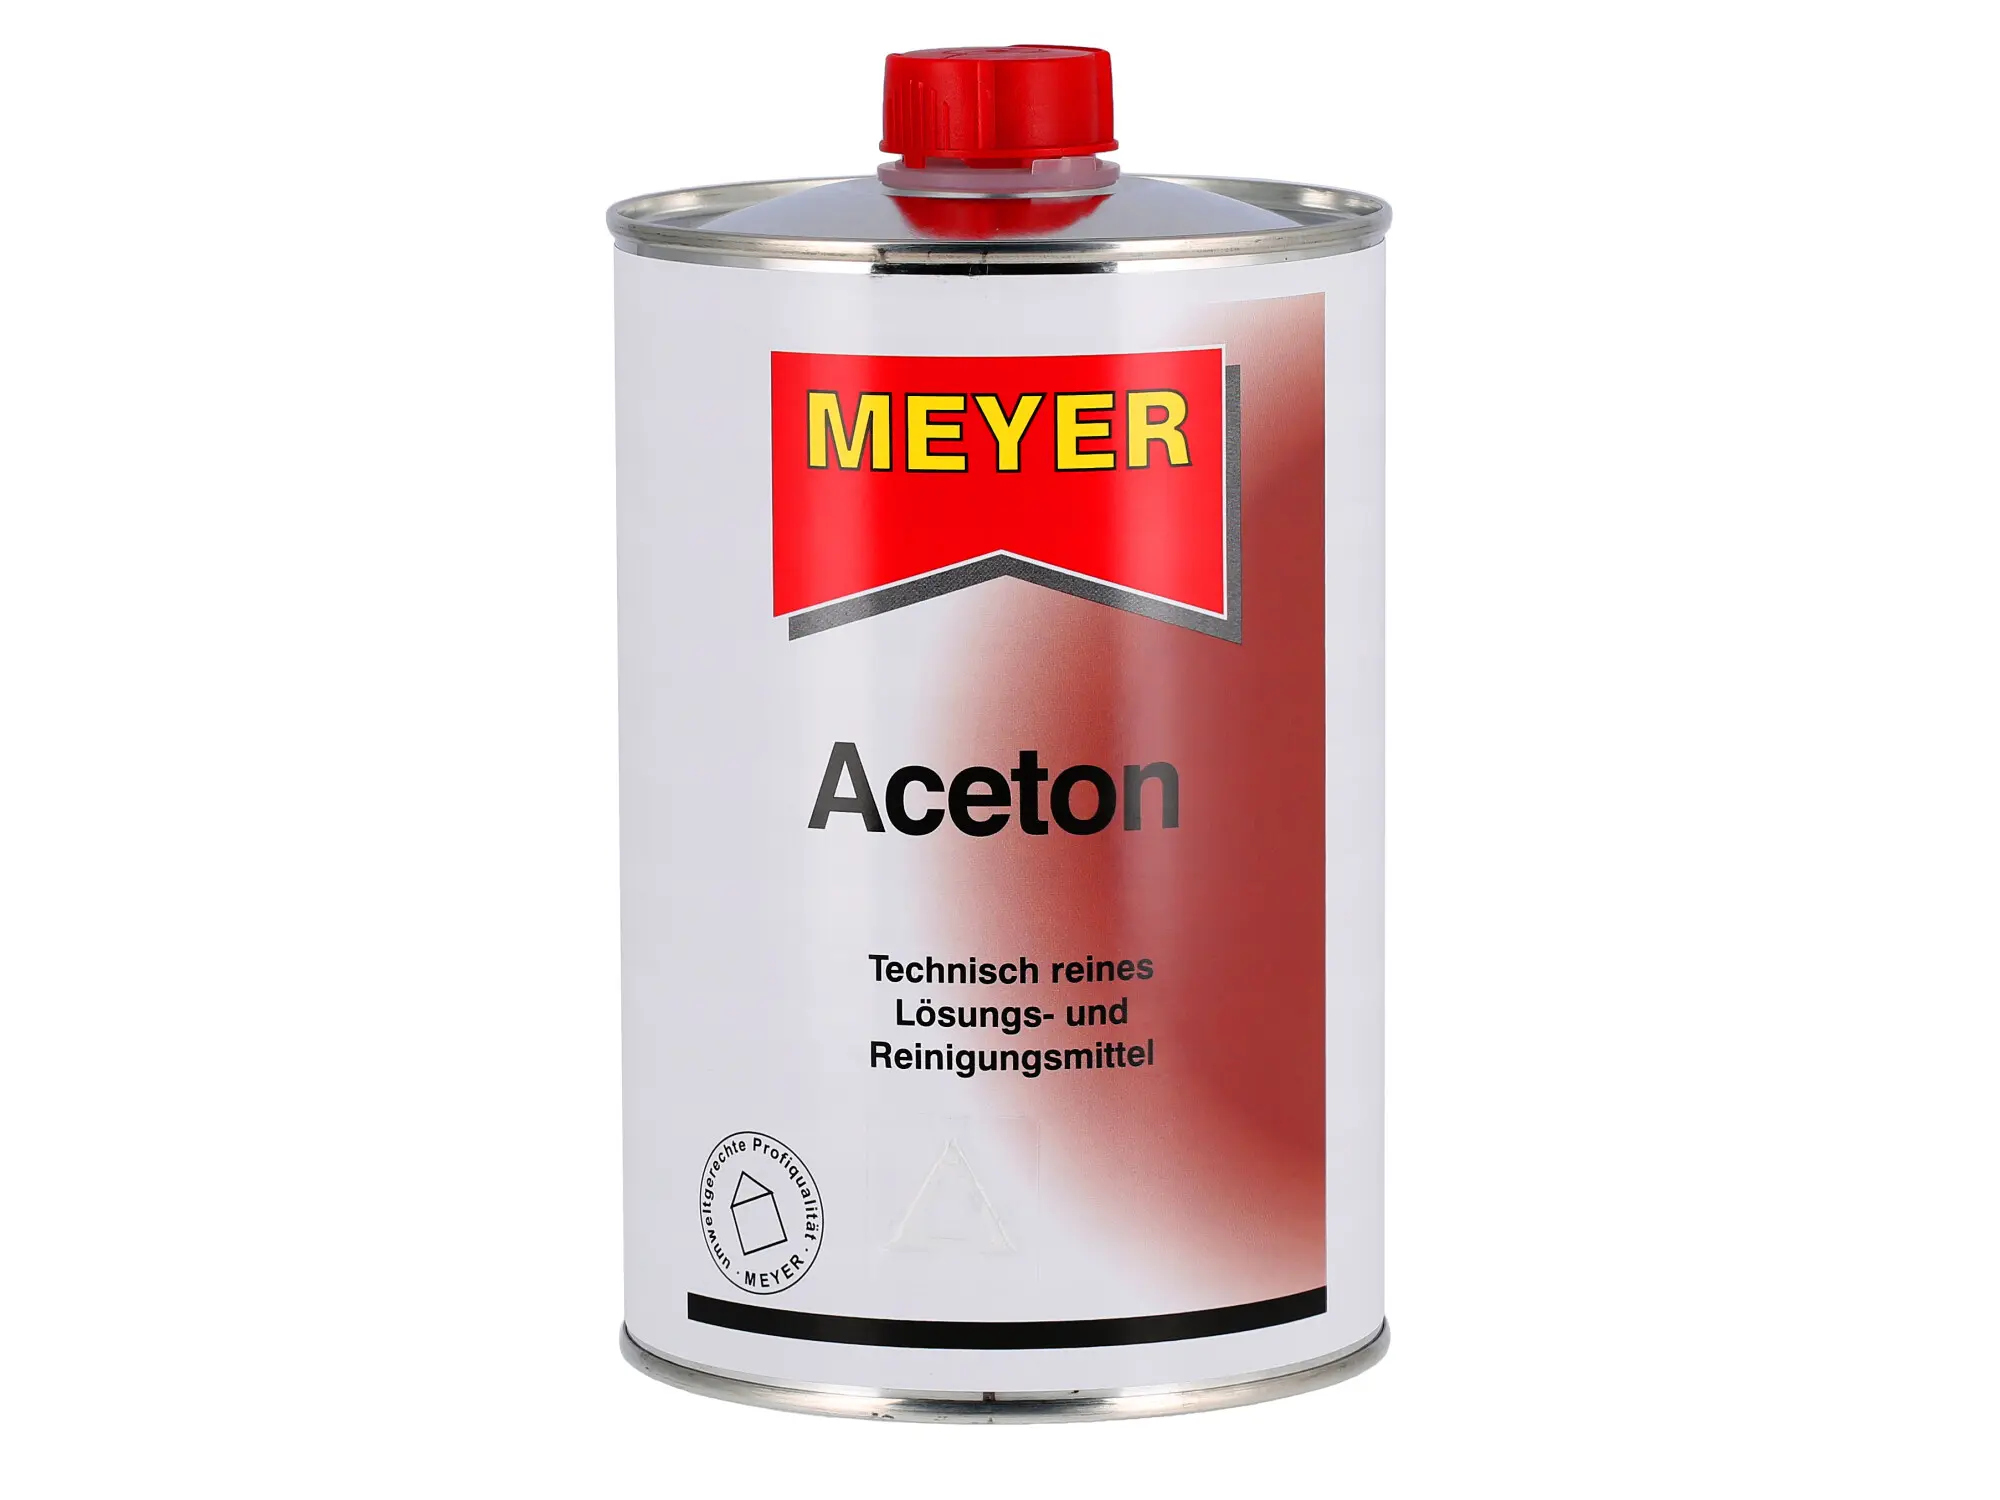 Aceton, Lösungs- und Reinigungsmittel - 1 Liter, Art.-Nr.: 10075724 - Bild 1